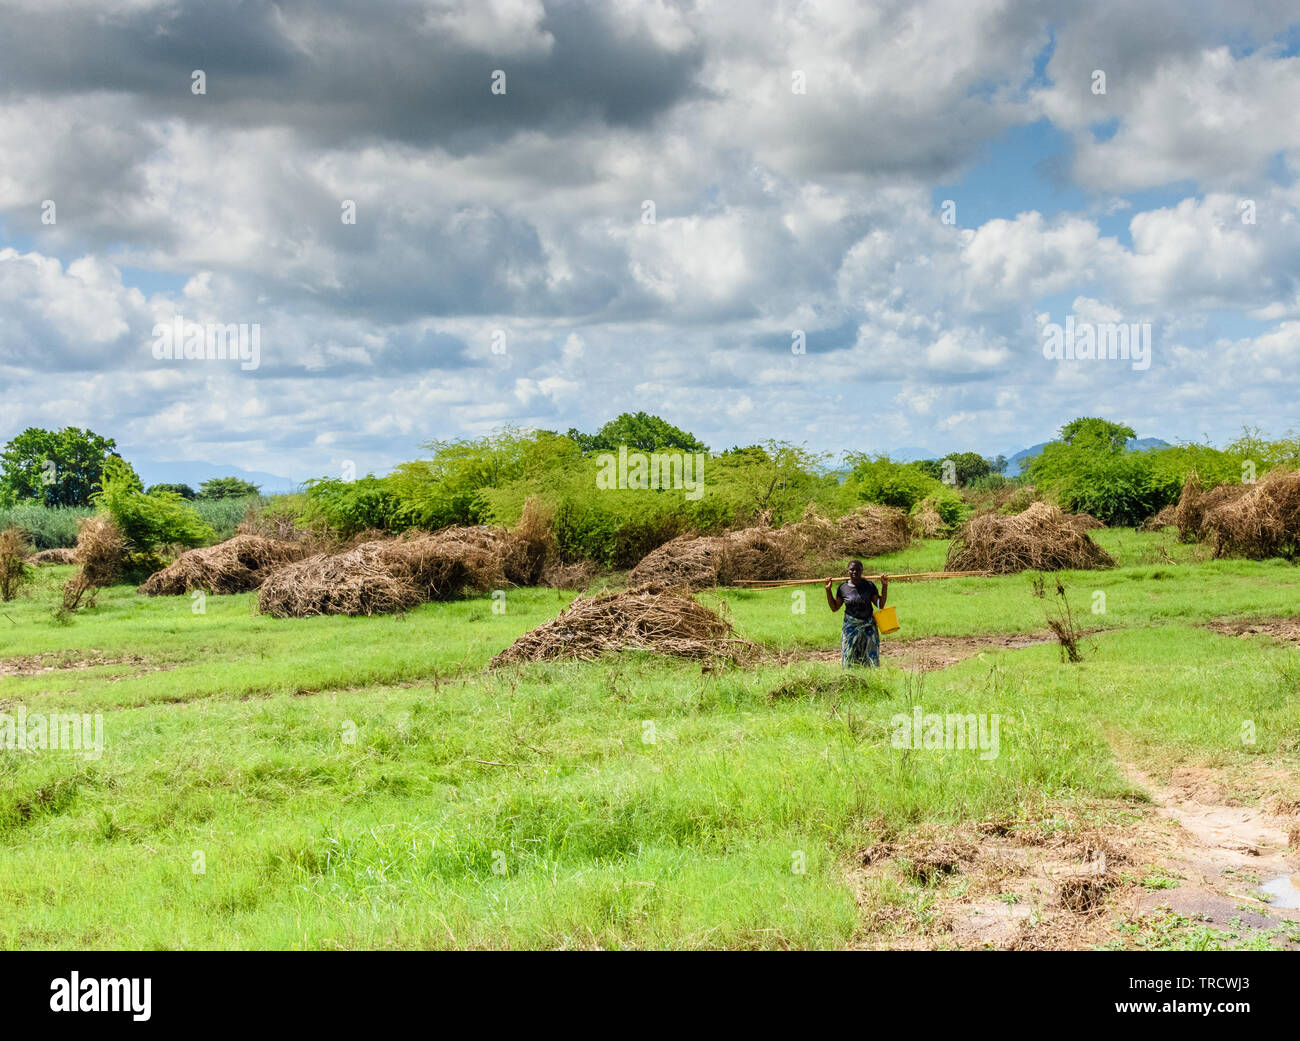 Femme portant un seau en plastique et canne à pêche marche à travers un champ saturées au Malawi qui a été effacée de la nourriture par les inondations après le passage du cyclone Idai Banque D'Images